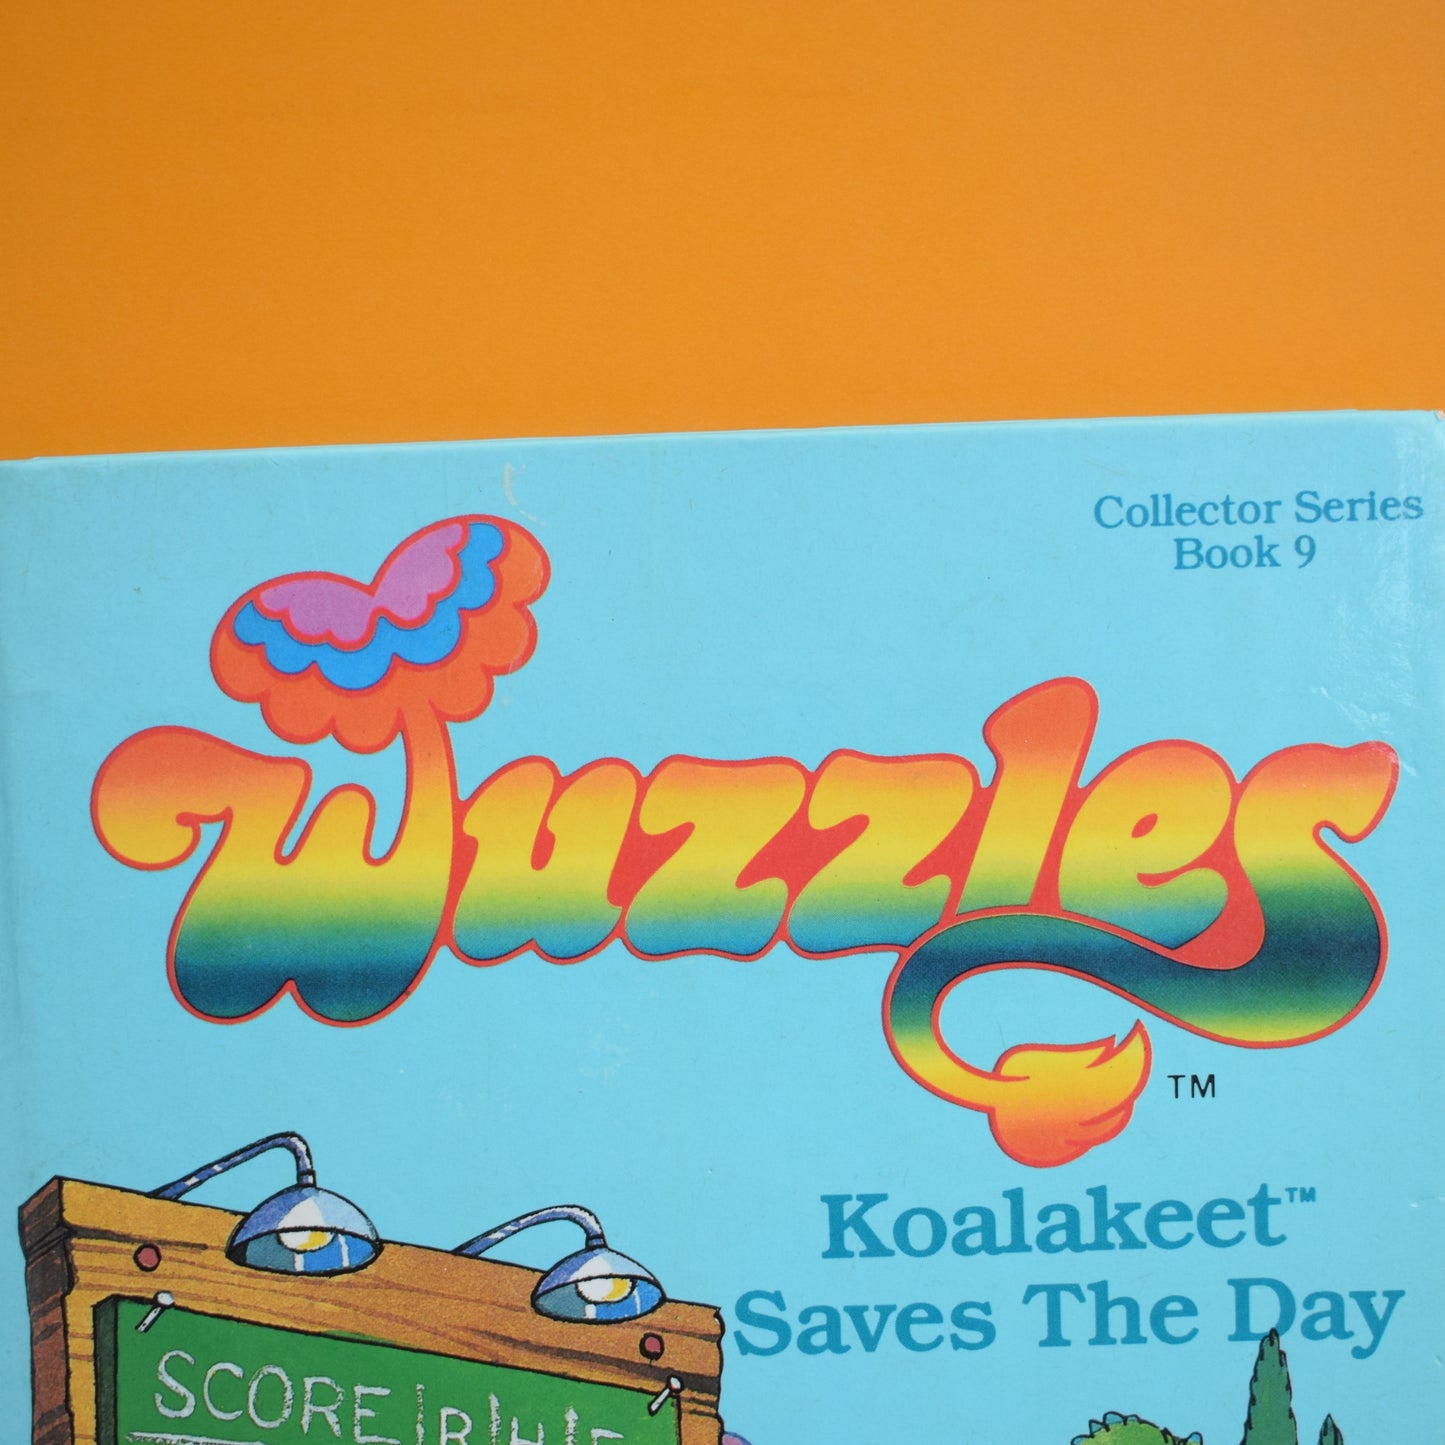 Vintage 1980s Wuzzles Book